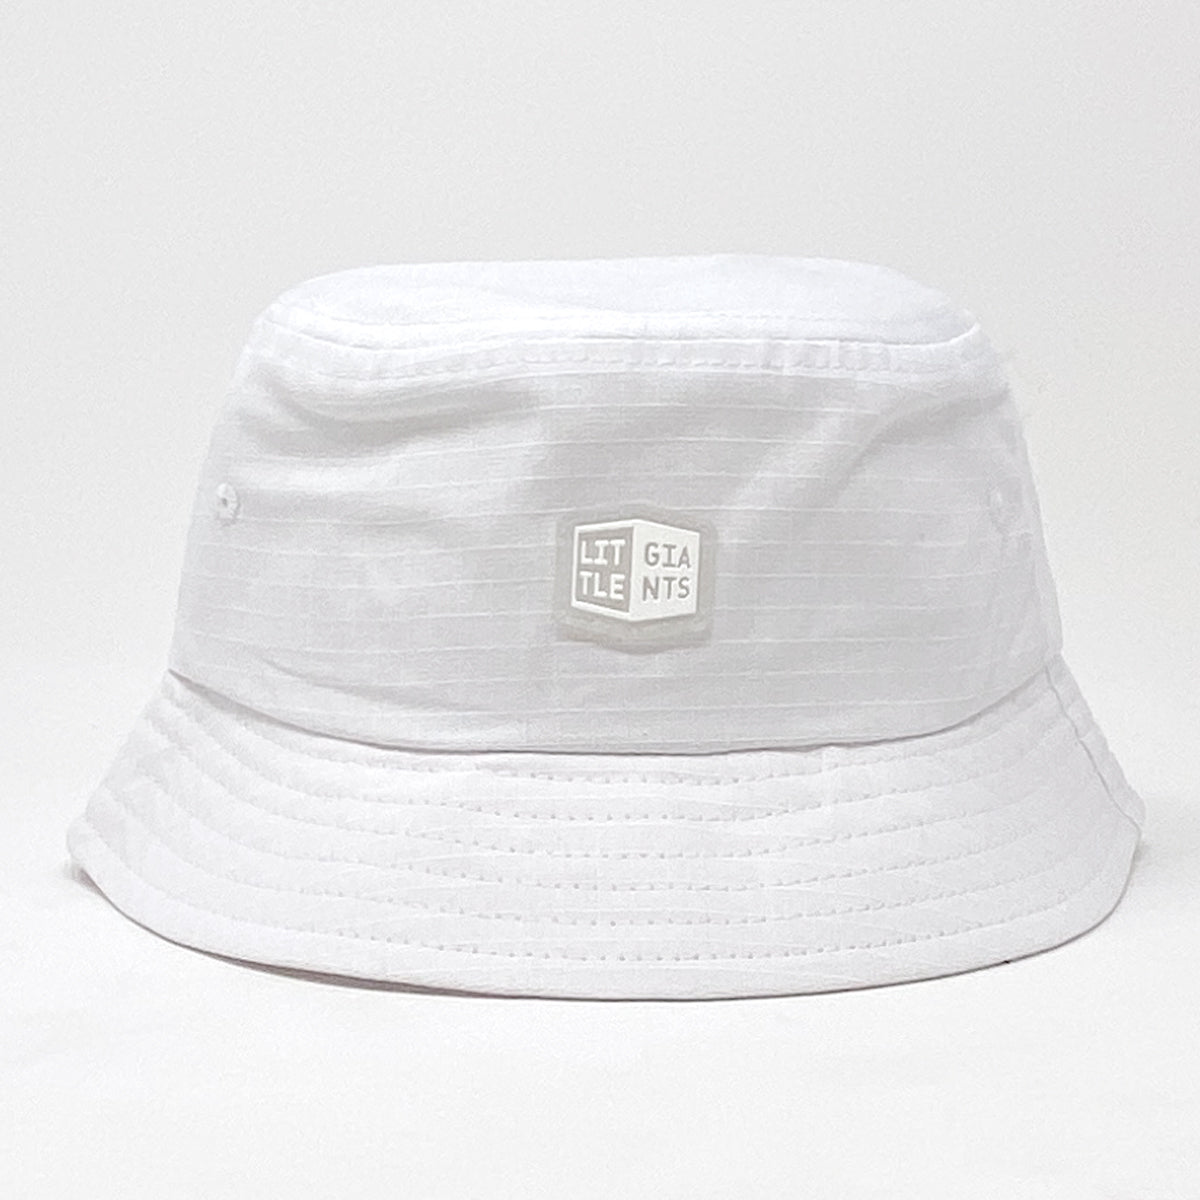 Little Giants Bucket Hat (White)